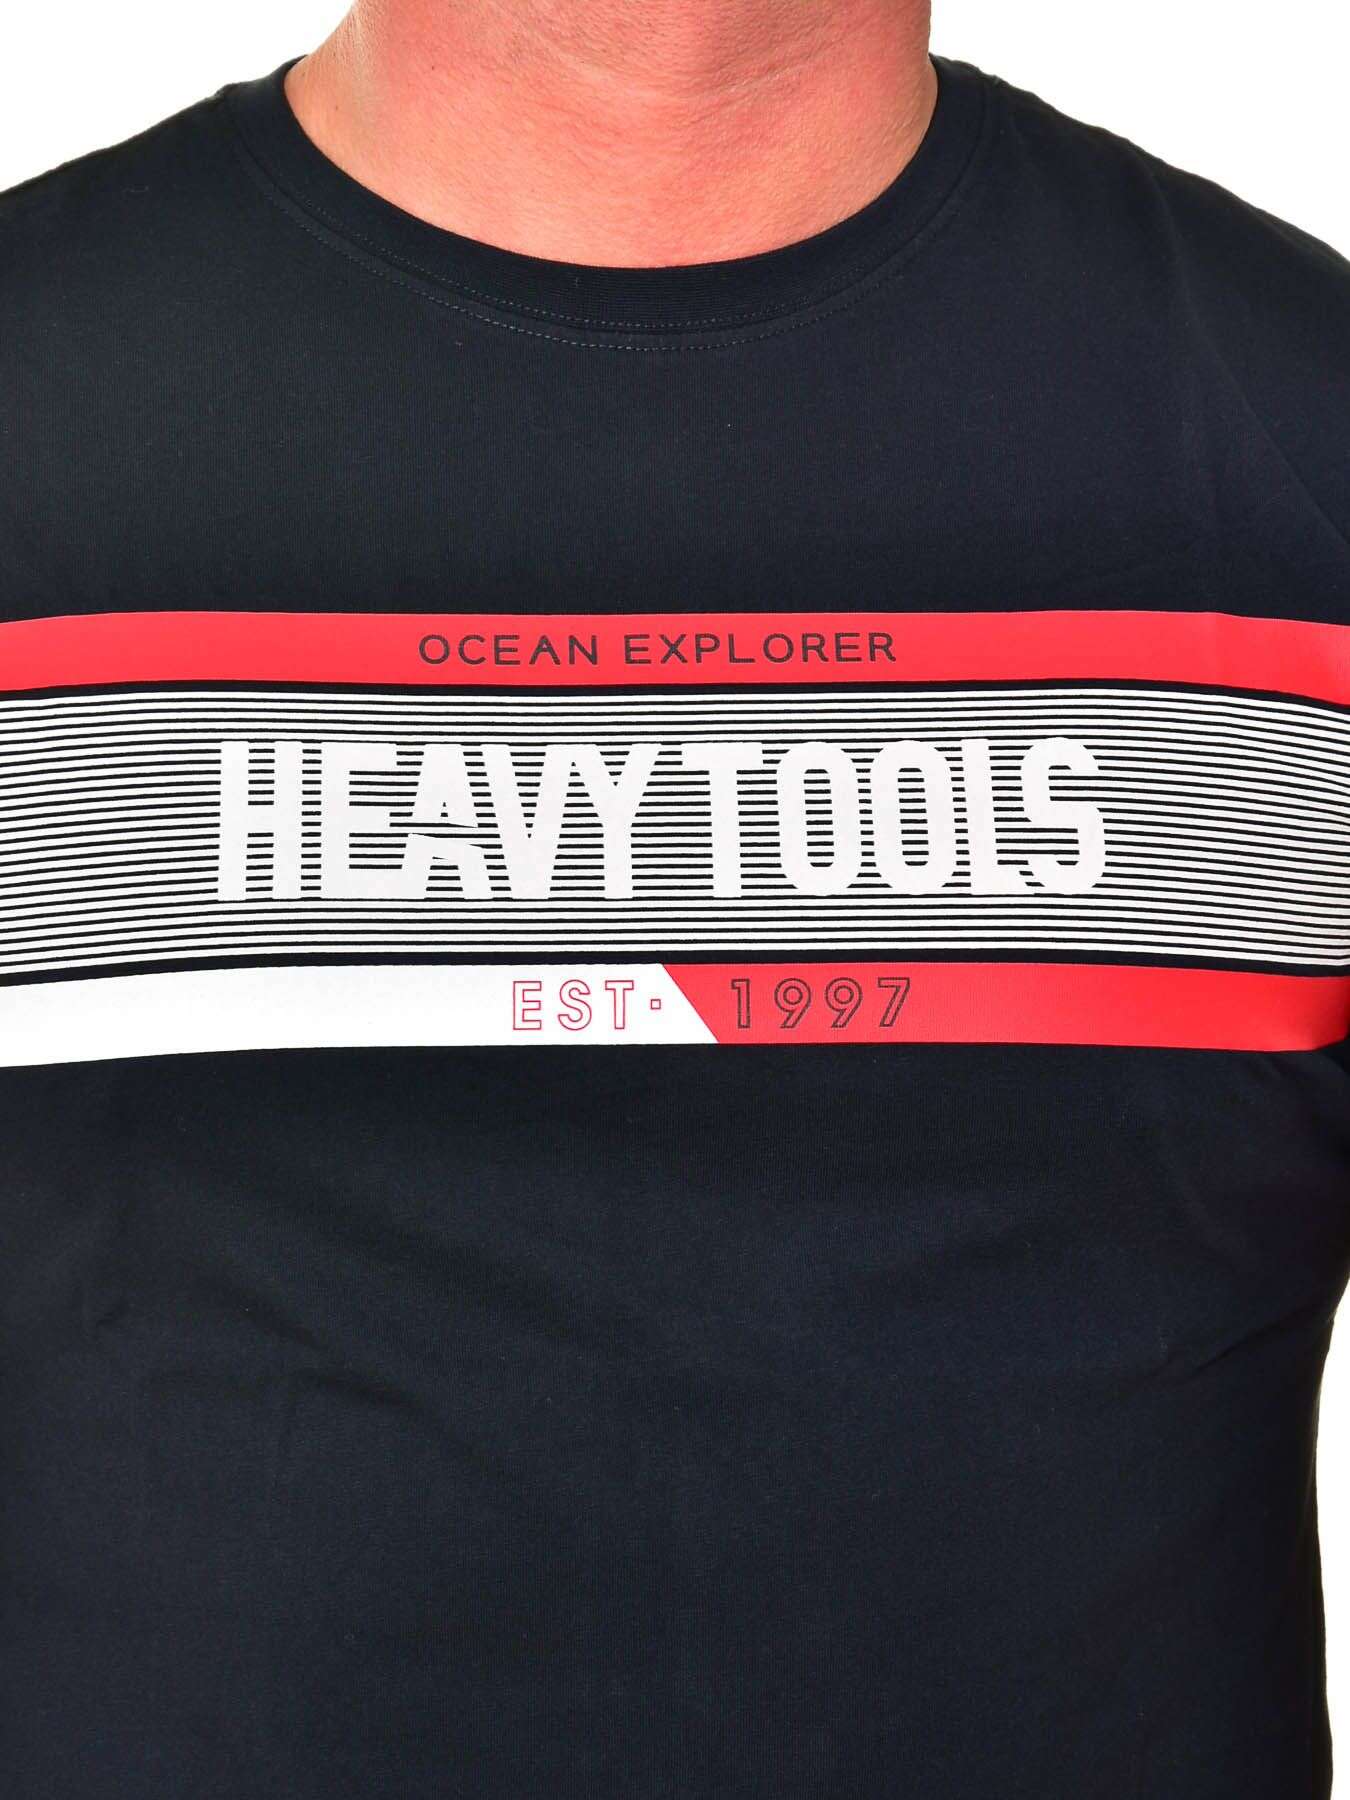 Heavy Tools férfi póló MEDIUM